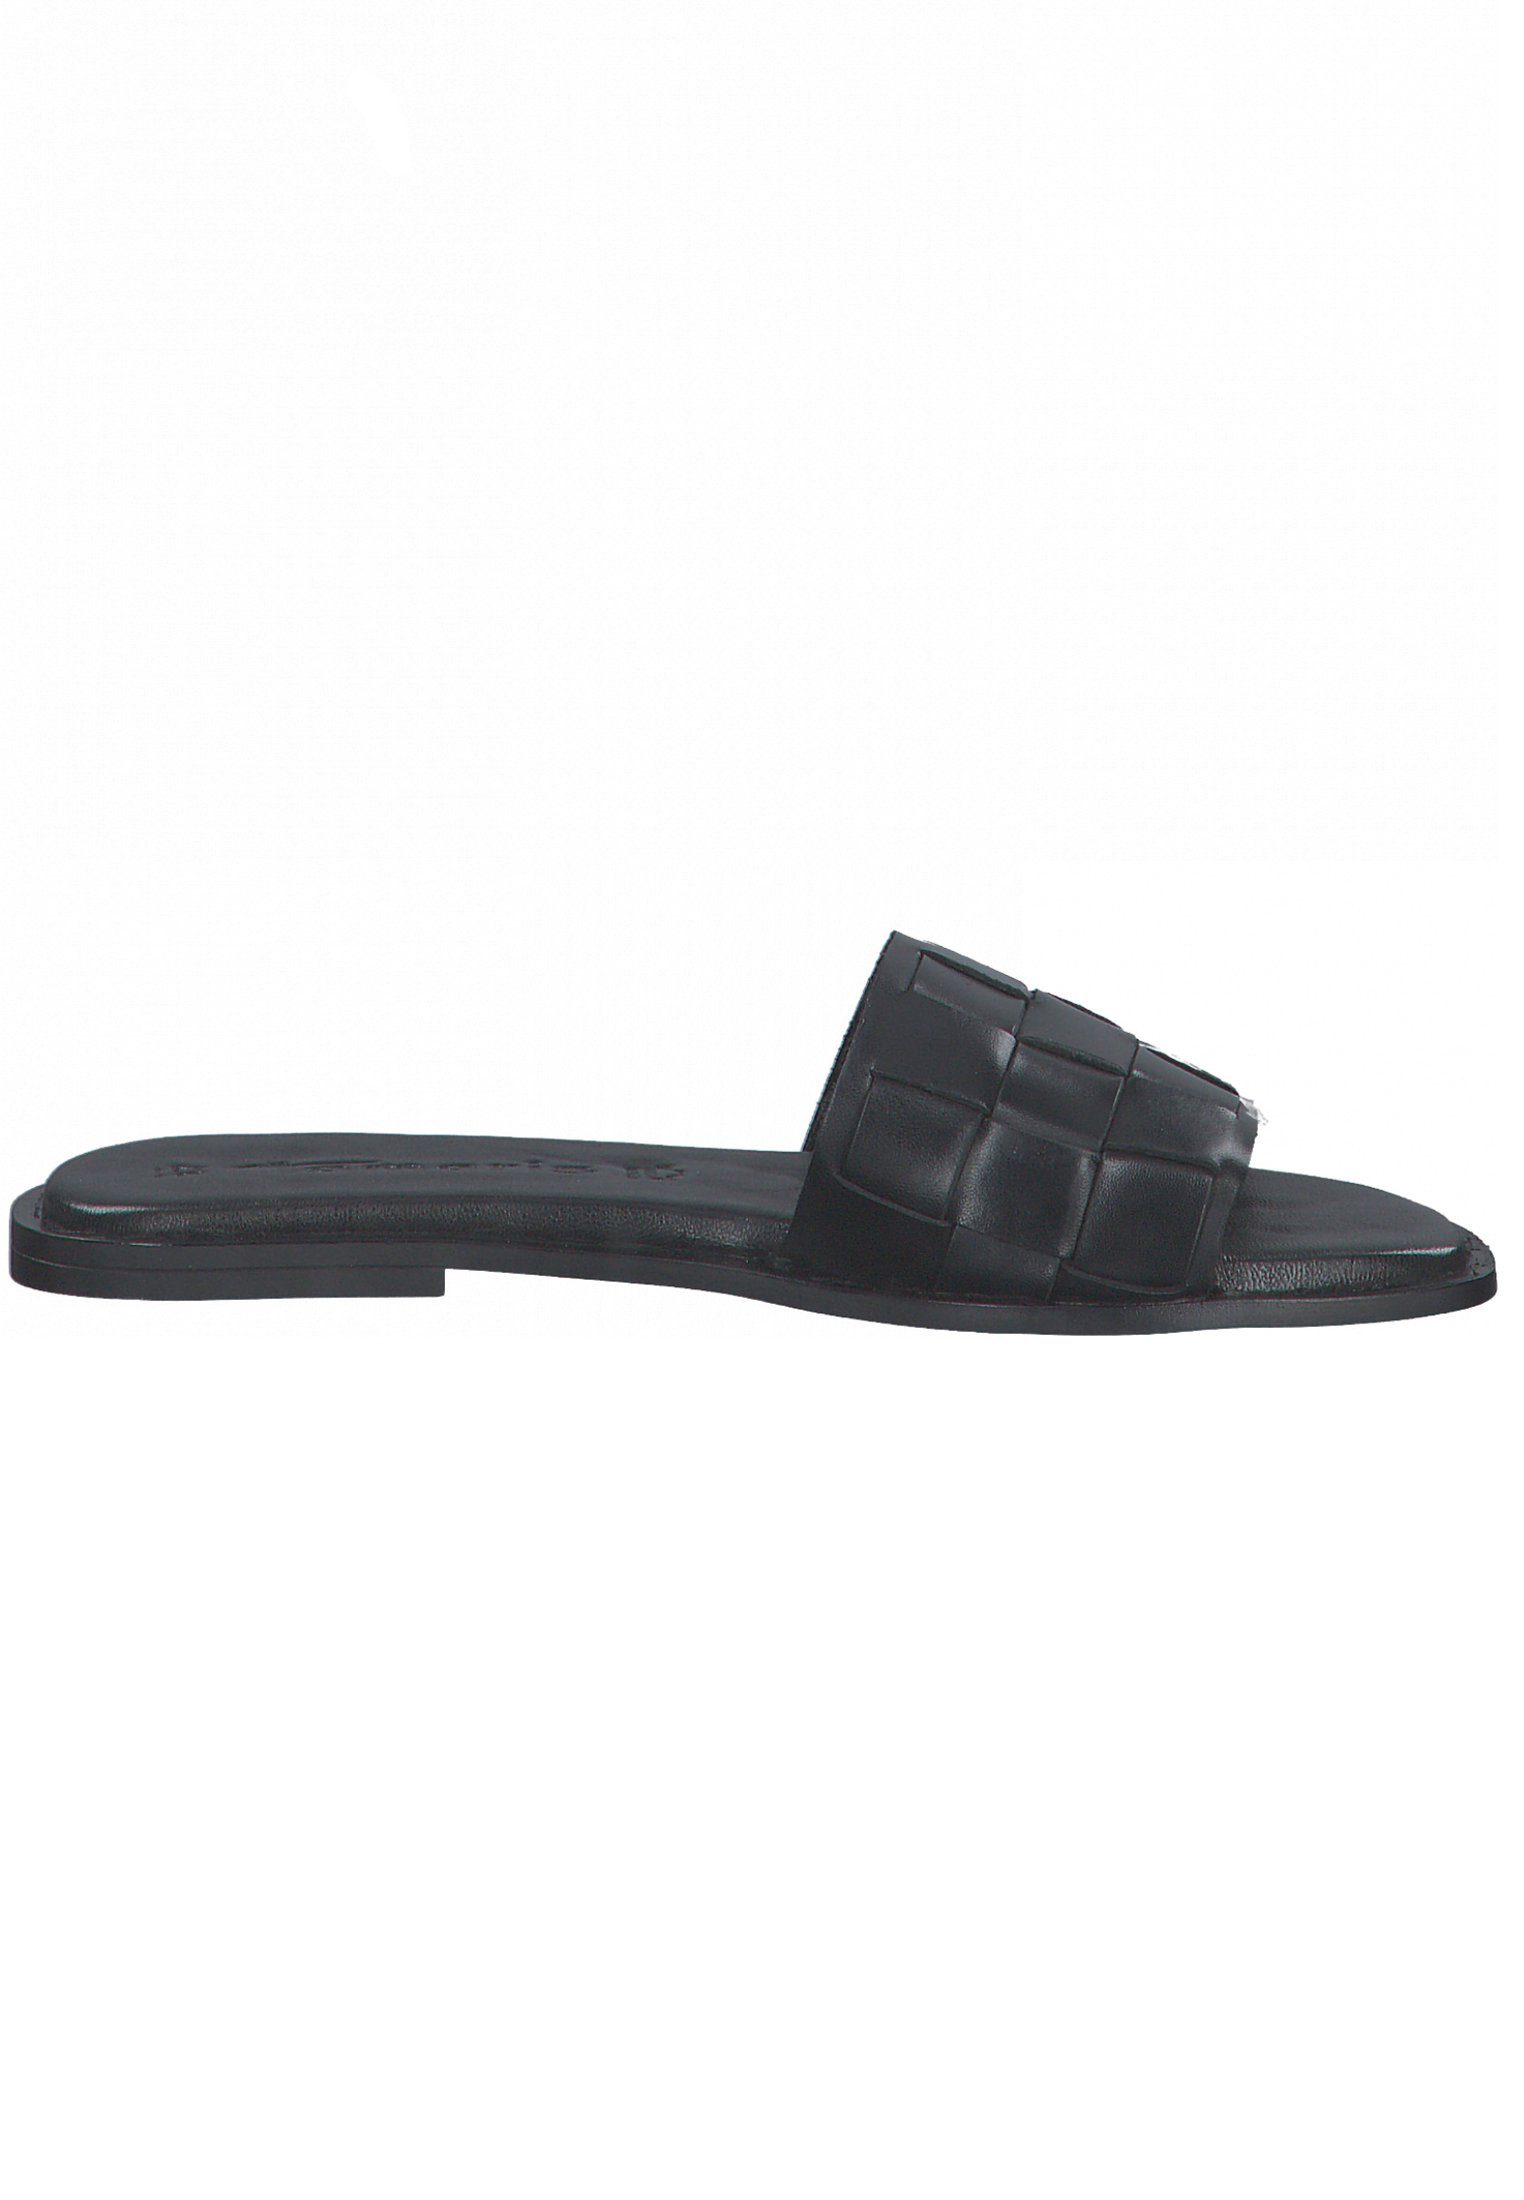 Black Tamaris 003 Sandale 1-27122-28 Leather